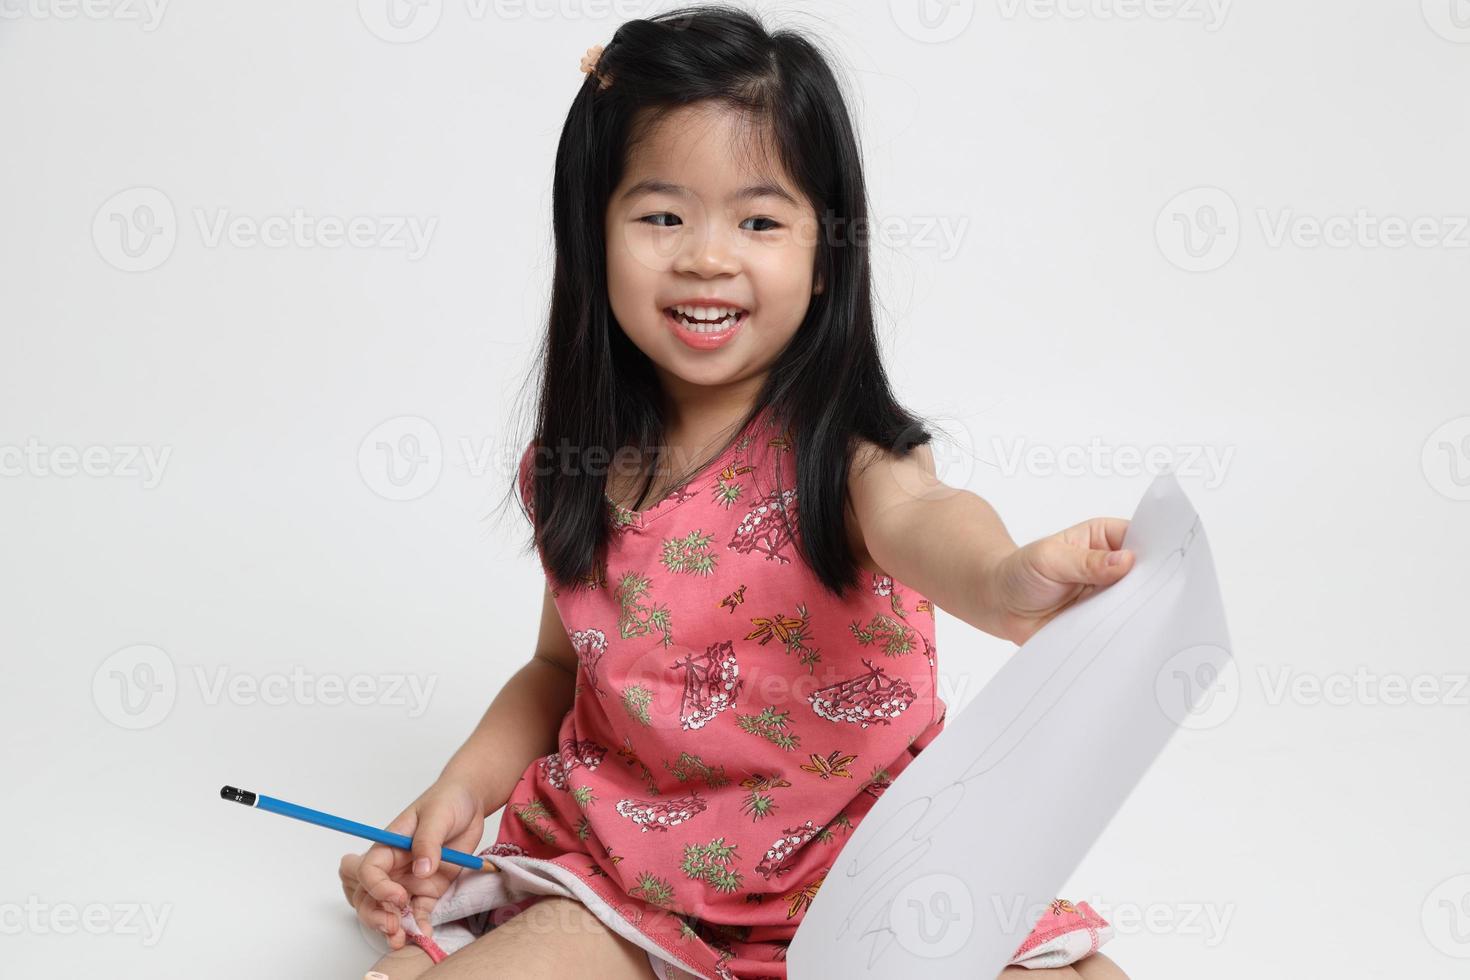 enfant asiatique mignon photo